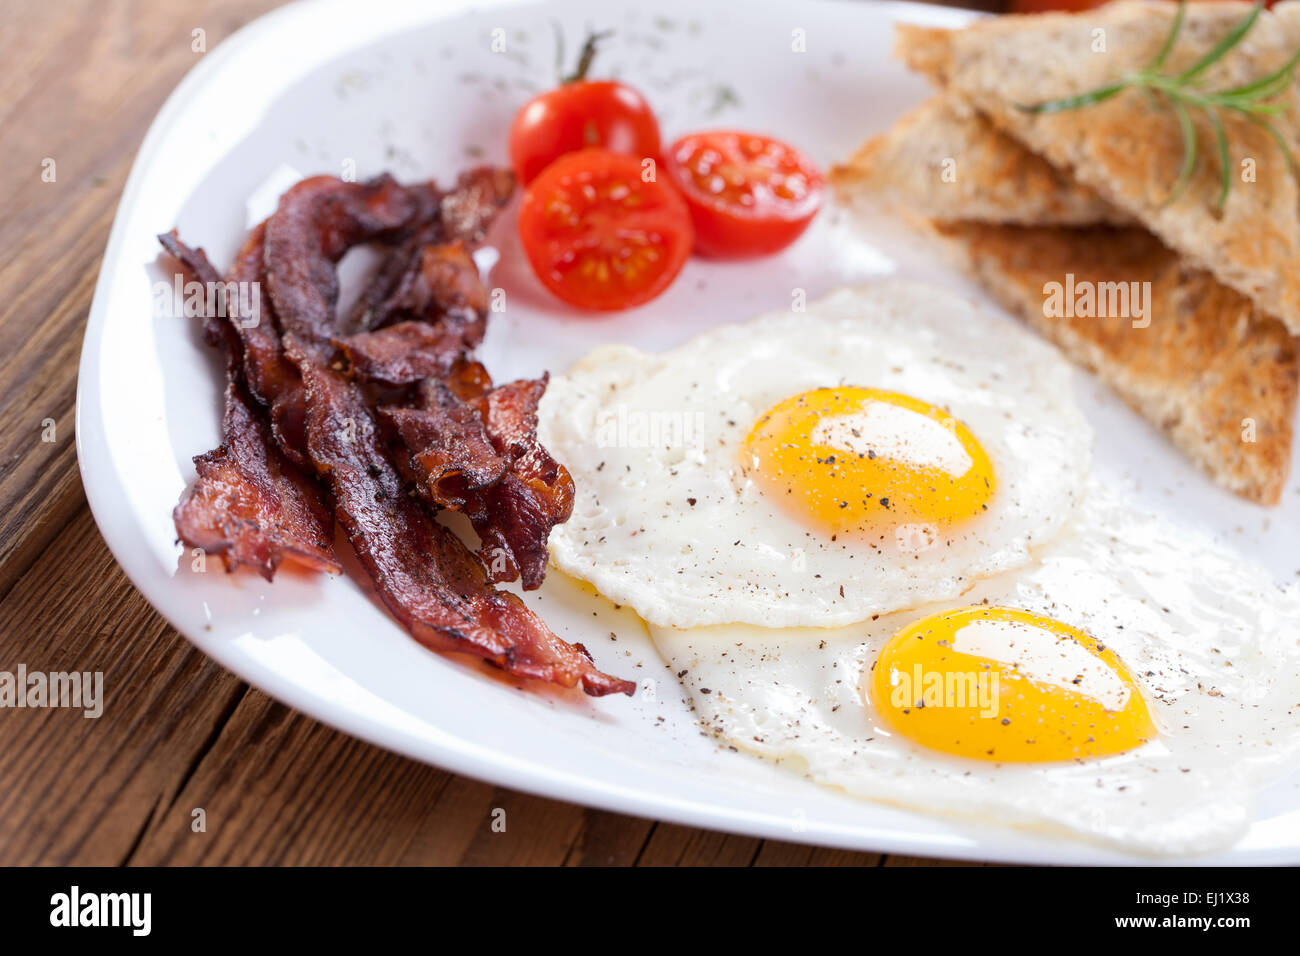 Œuf frit délicieux avec des épices, de bacon, de croûtons et de tomates sur une assiette blanche. Composition sur une table en bois à l'arrière-plan Banque D'Images